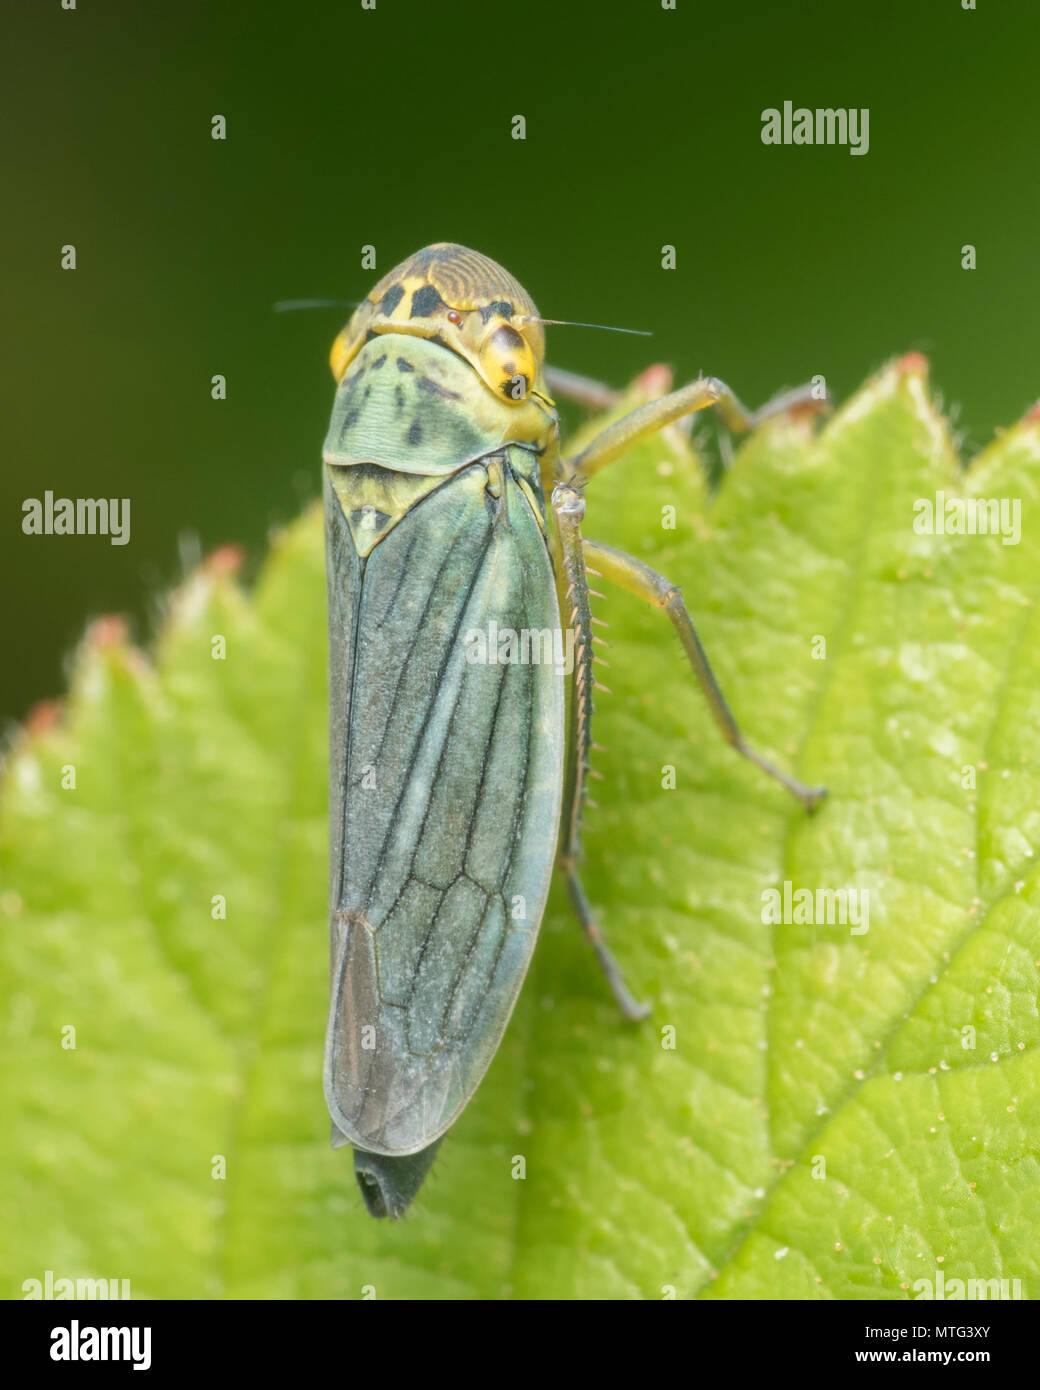 Feuille verte (Cicadella viridis-bac) perché sur la feuille. Tipperary, Irlande Banque D'Images